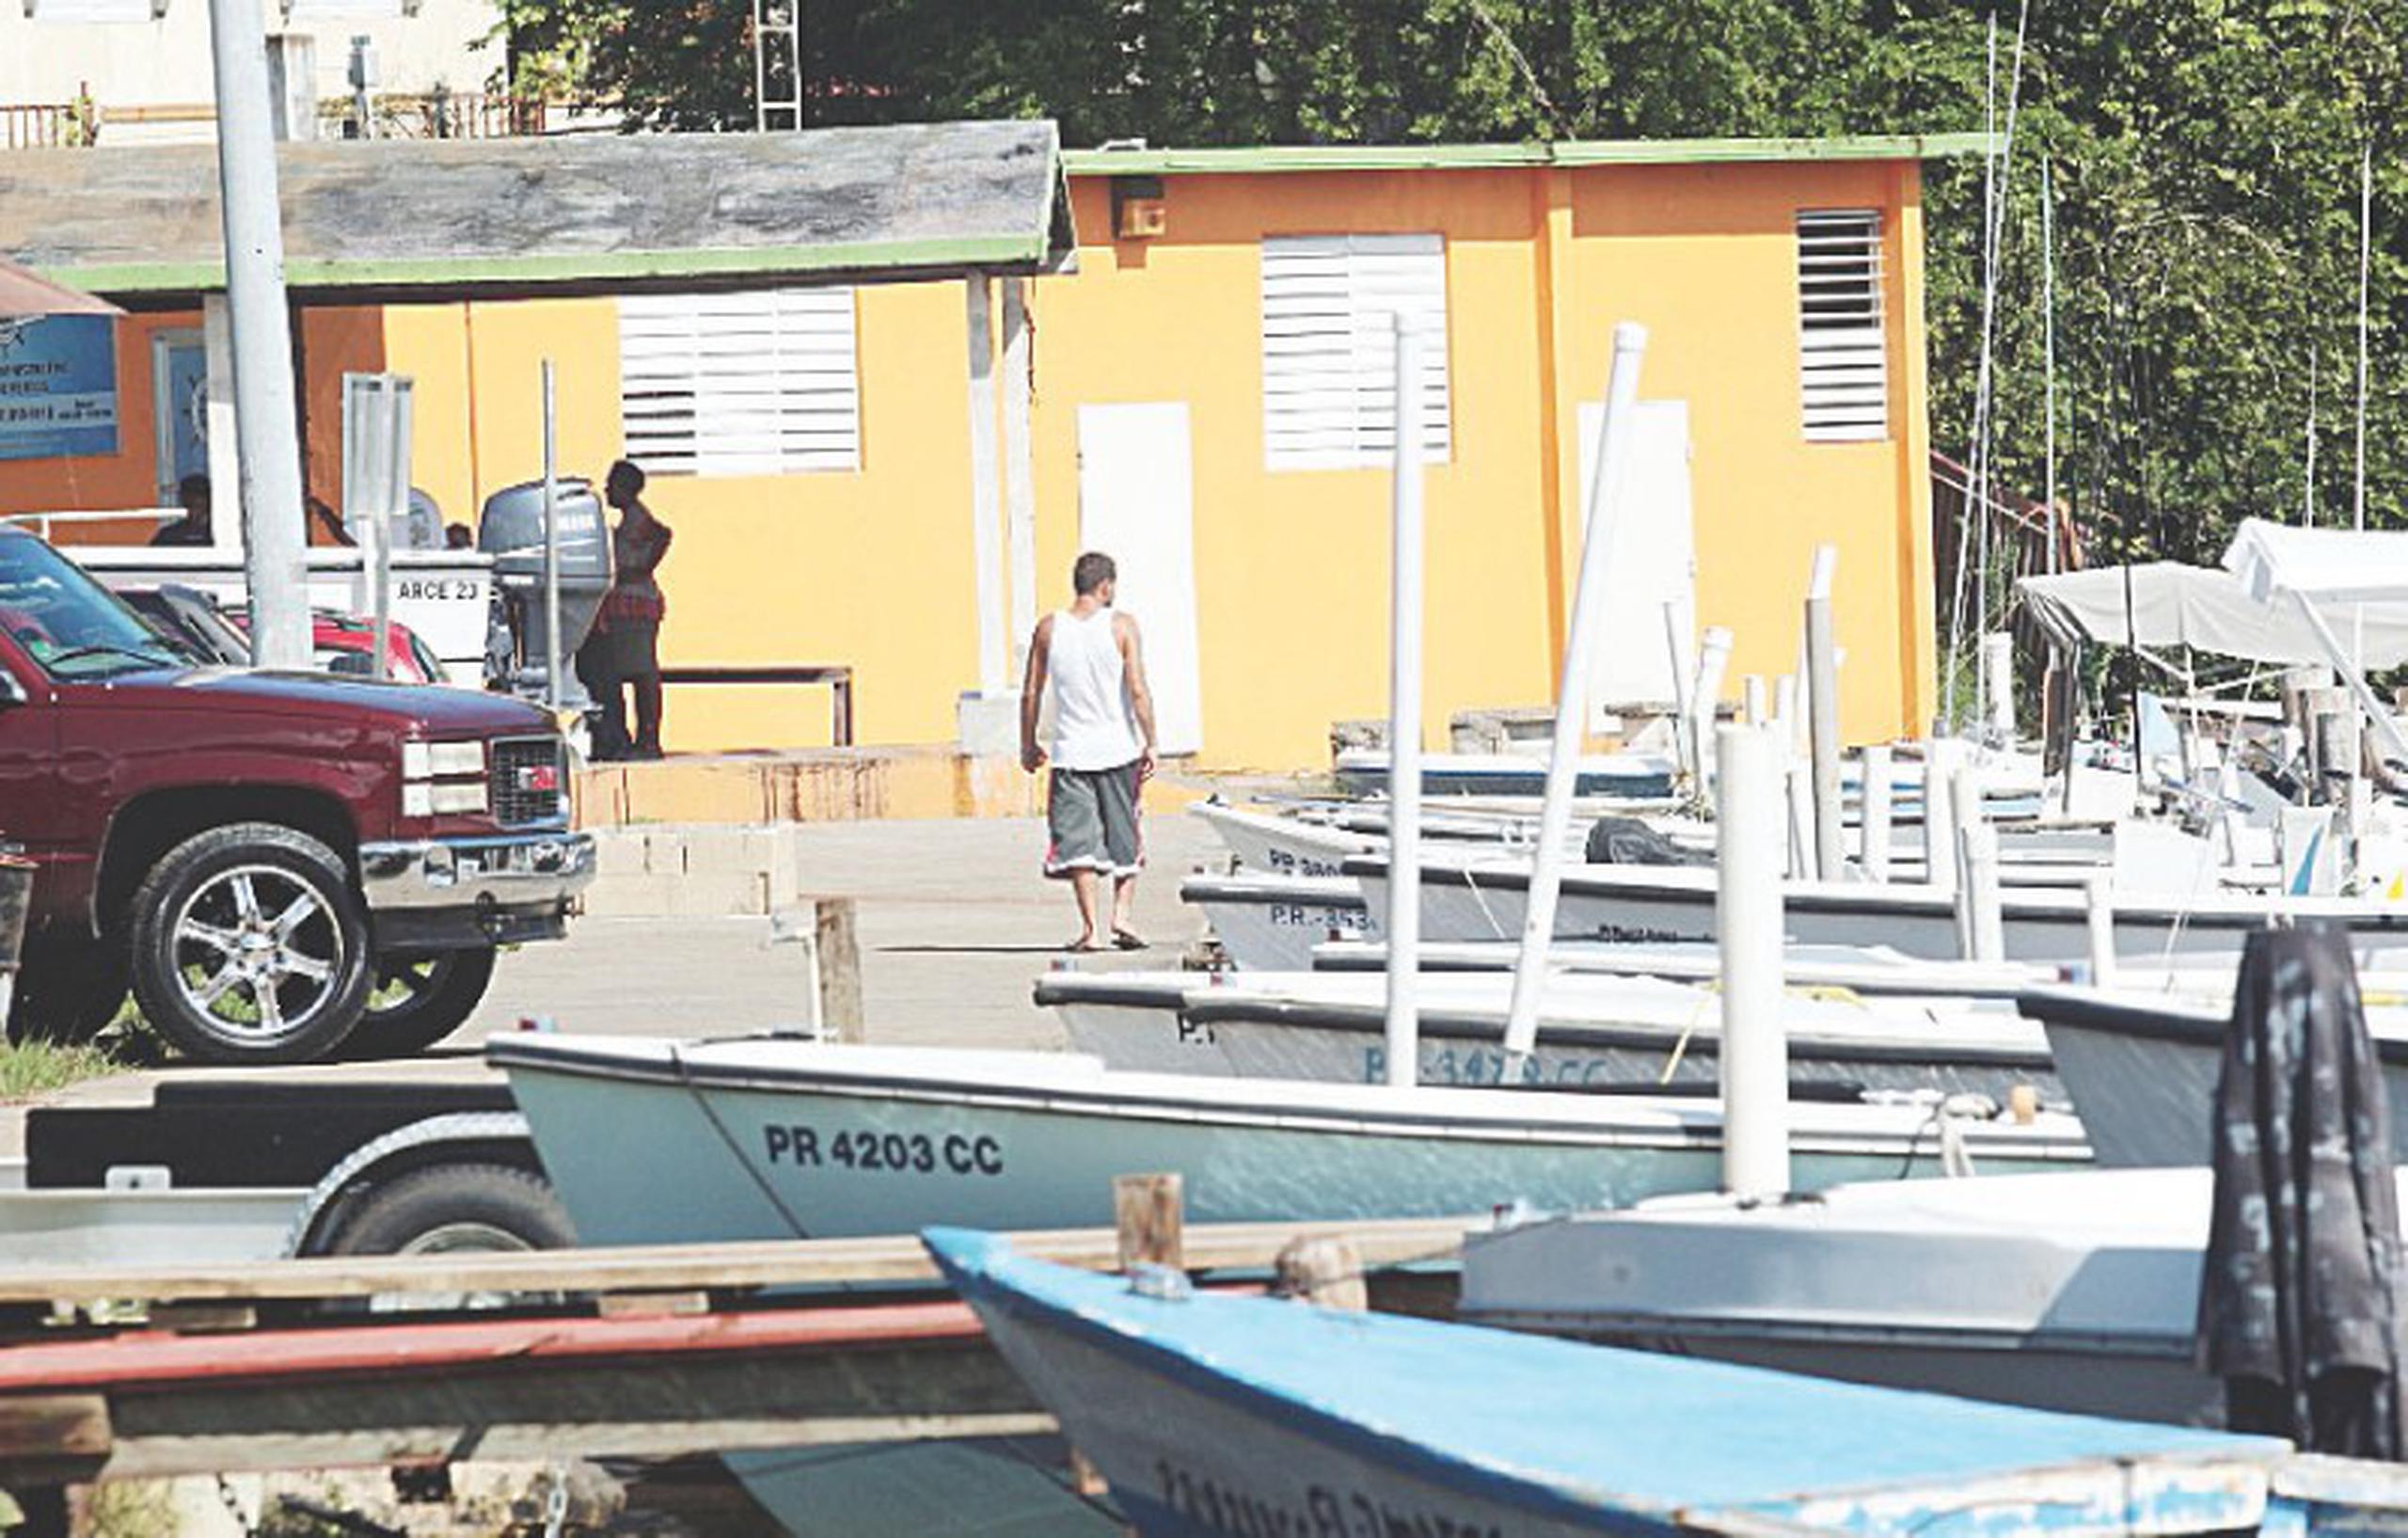 La villa pesquera del municipio de Arecibo recibe ayuda de parte de INSEC. (Primera Hora / David Villafañe)